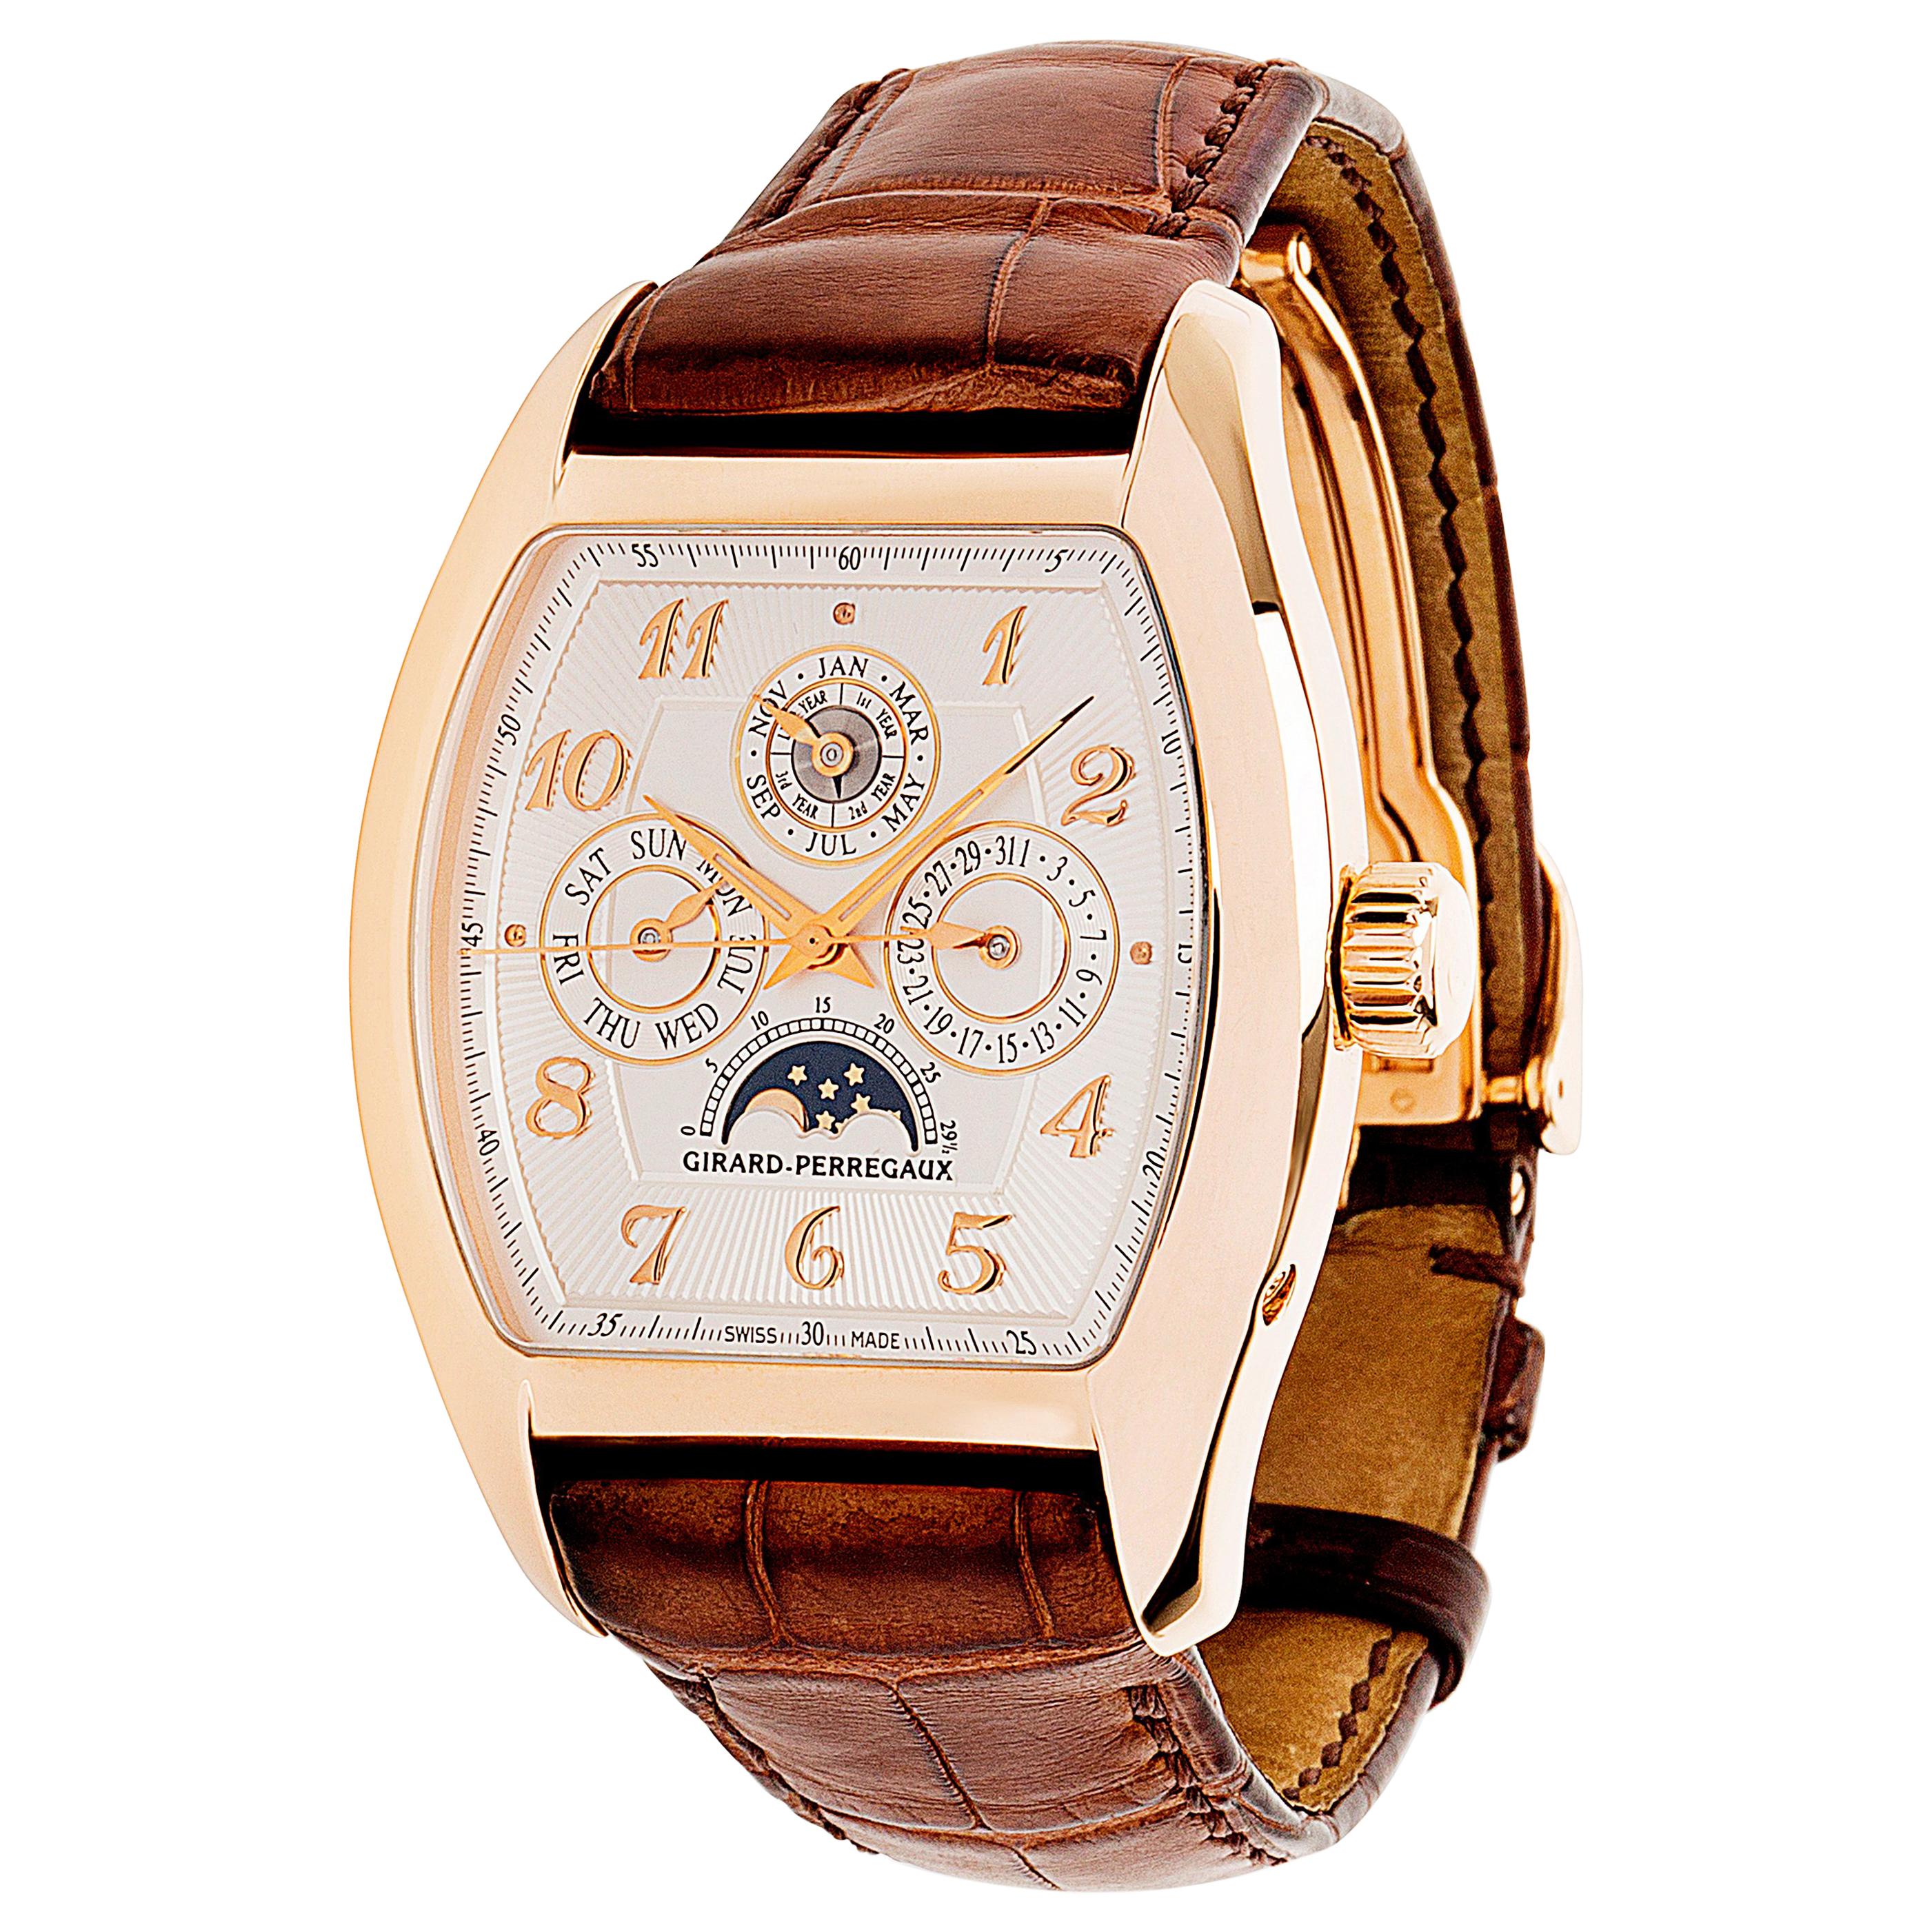 Girard-Perregaux Richeville 2722 Men's Watch in 18 Karat Gold